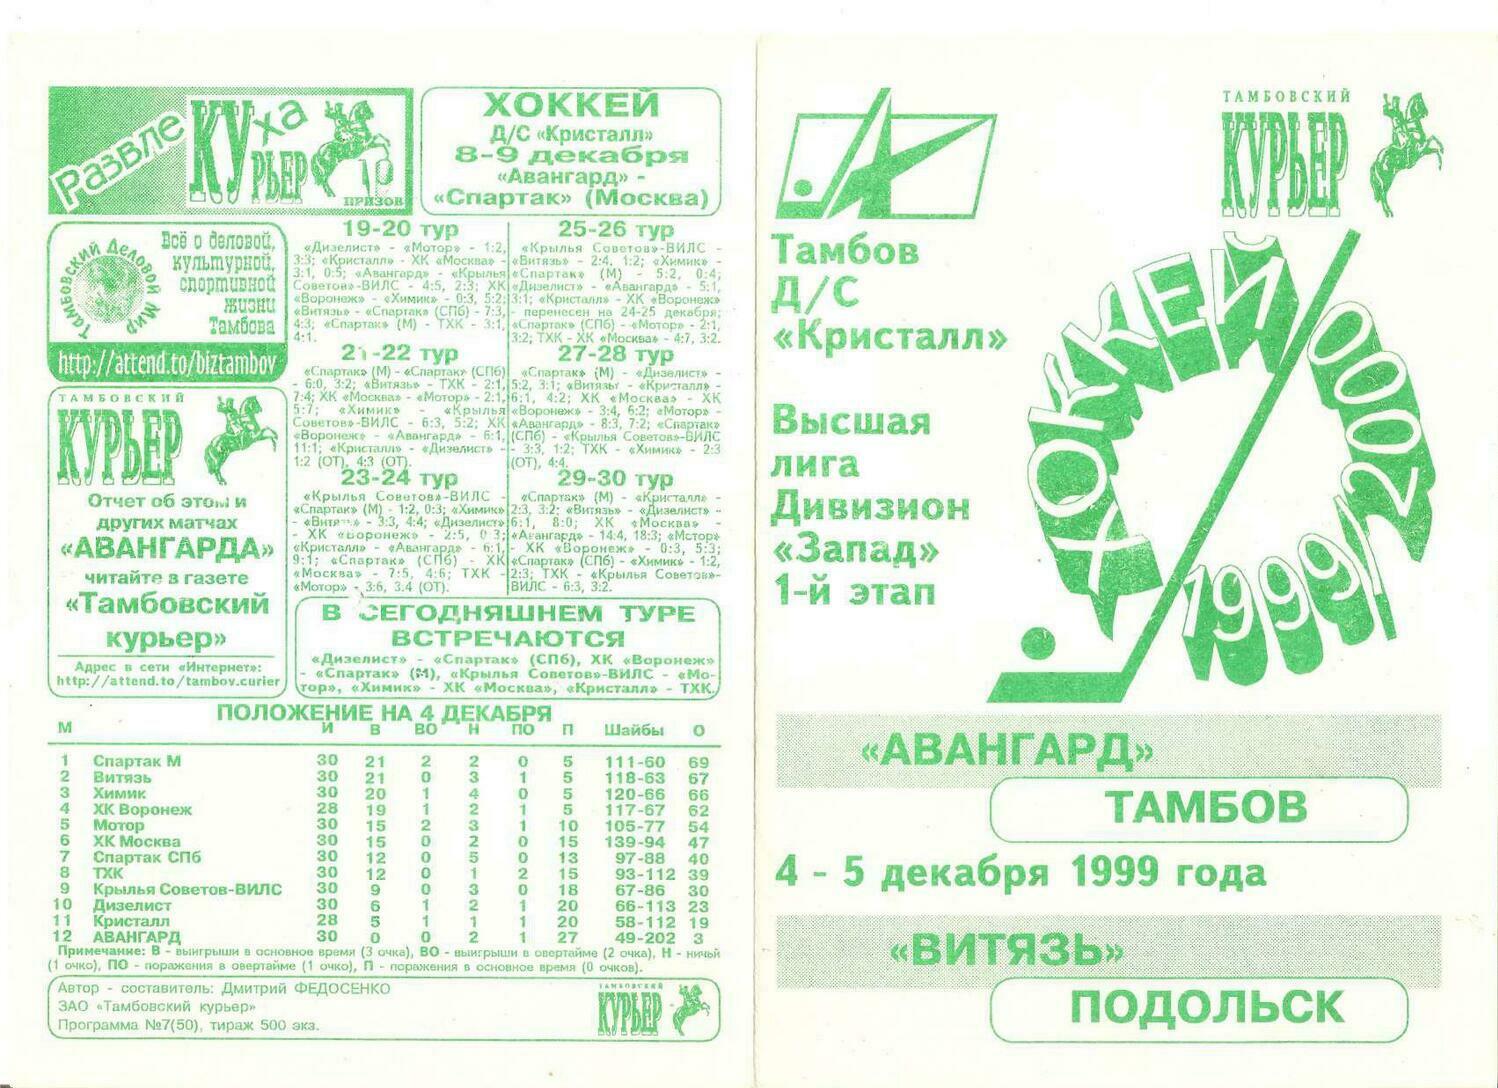 Программа "Авангард" Тамбов - "Витязь" Подольск №50 от 04-05.12.1999г.